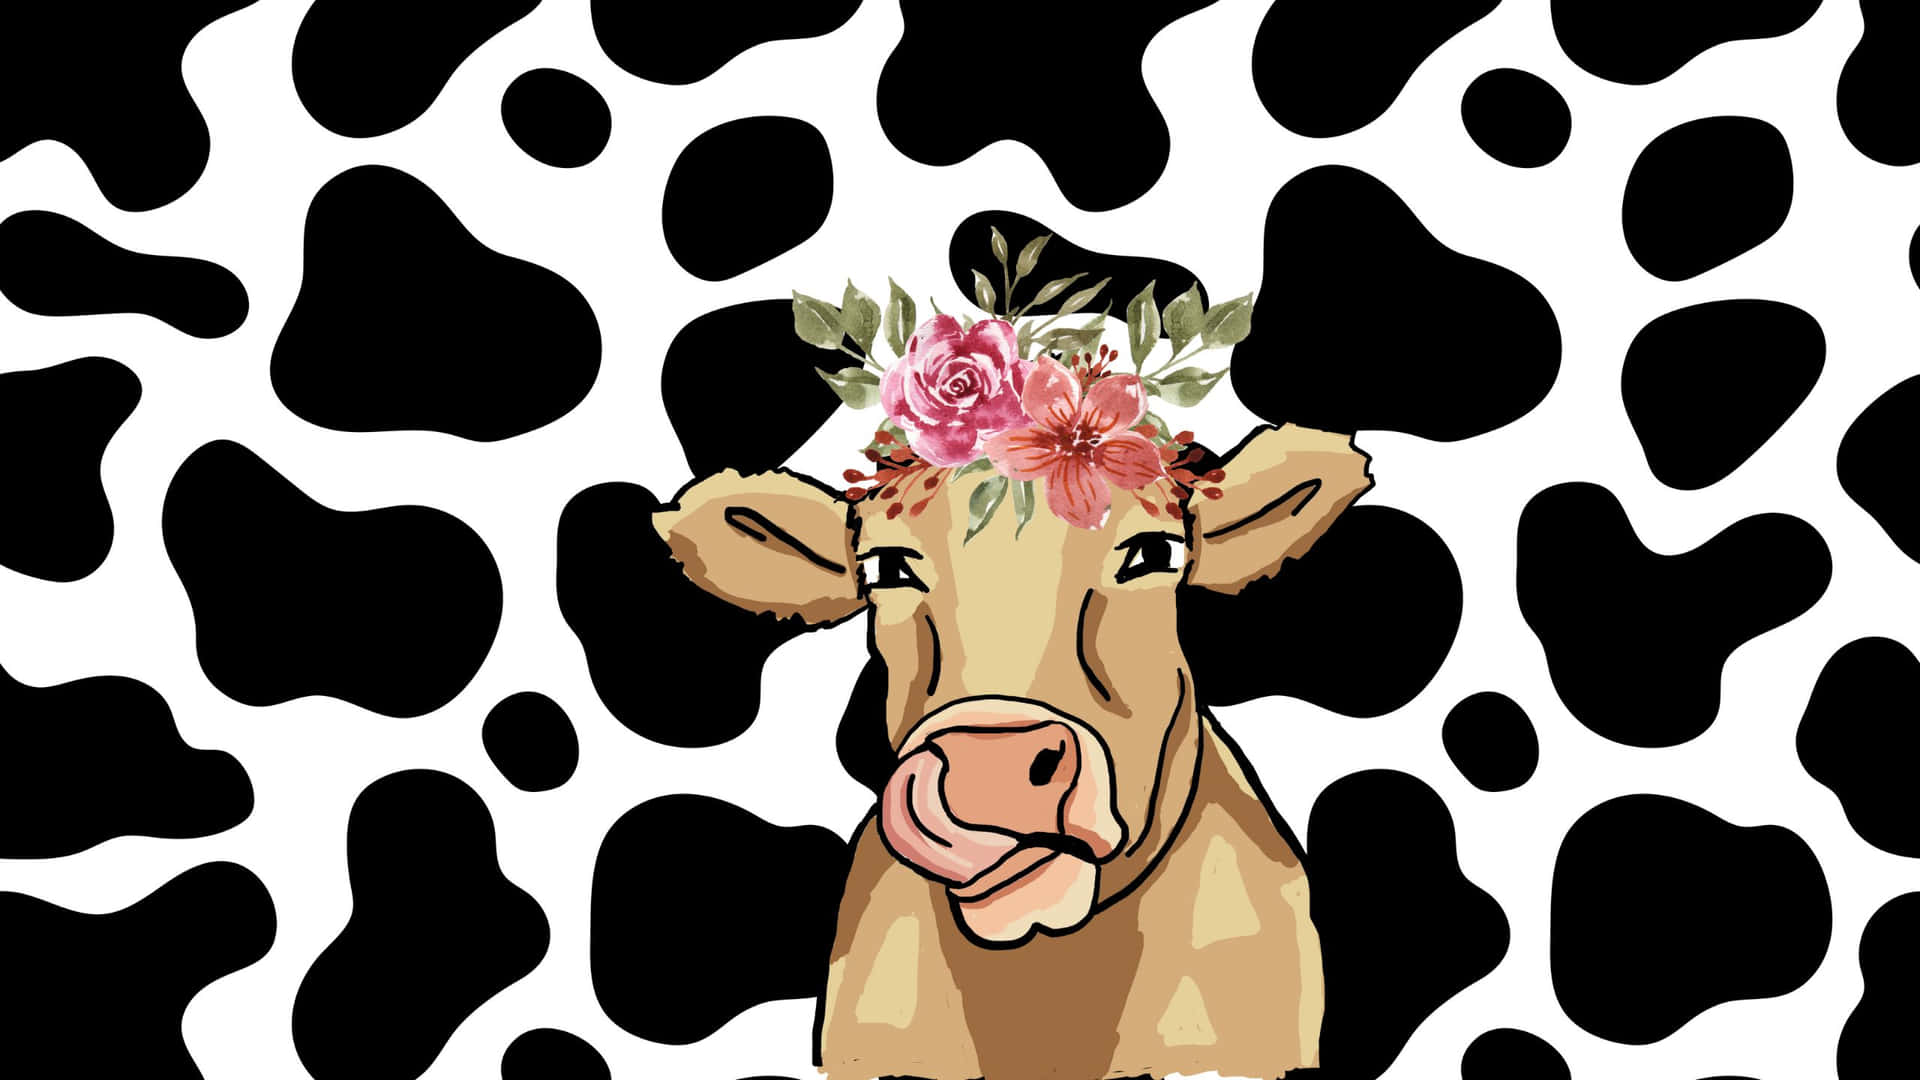 Cow wallpaper Vectors  Illustrations for Free Download  Freepik